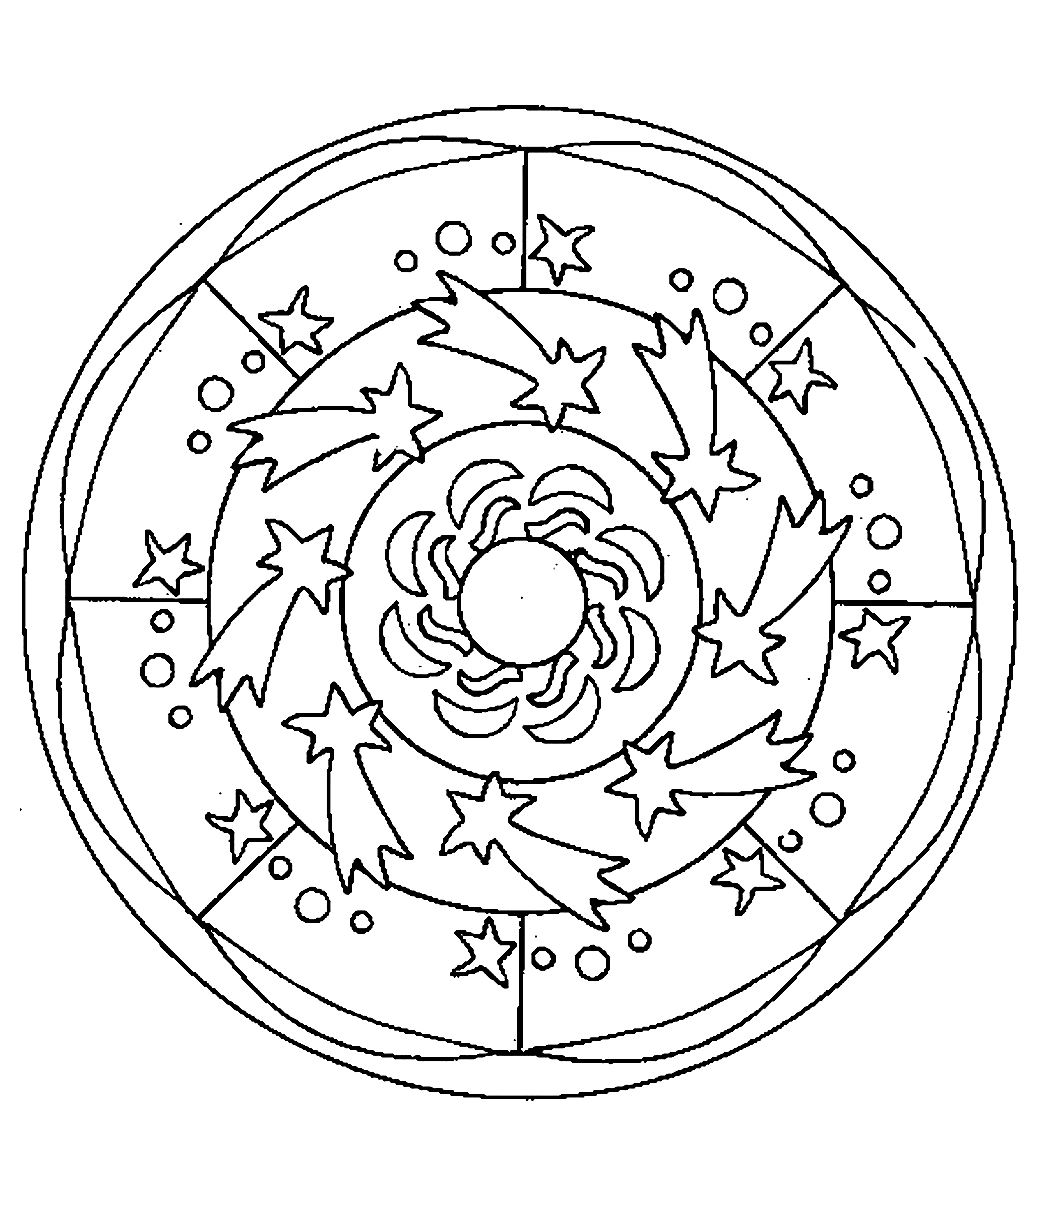 Ausmalbild Mandala im Stil 'Weltraum' mit sehr schönen Sternen, die im Kreis verteilt sind. Einfach auszumalen.